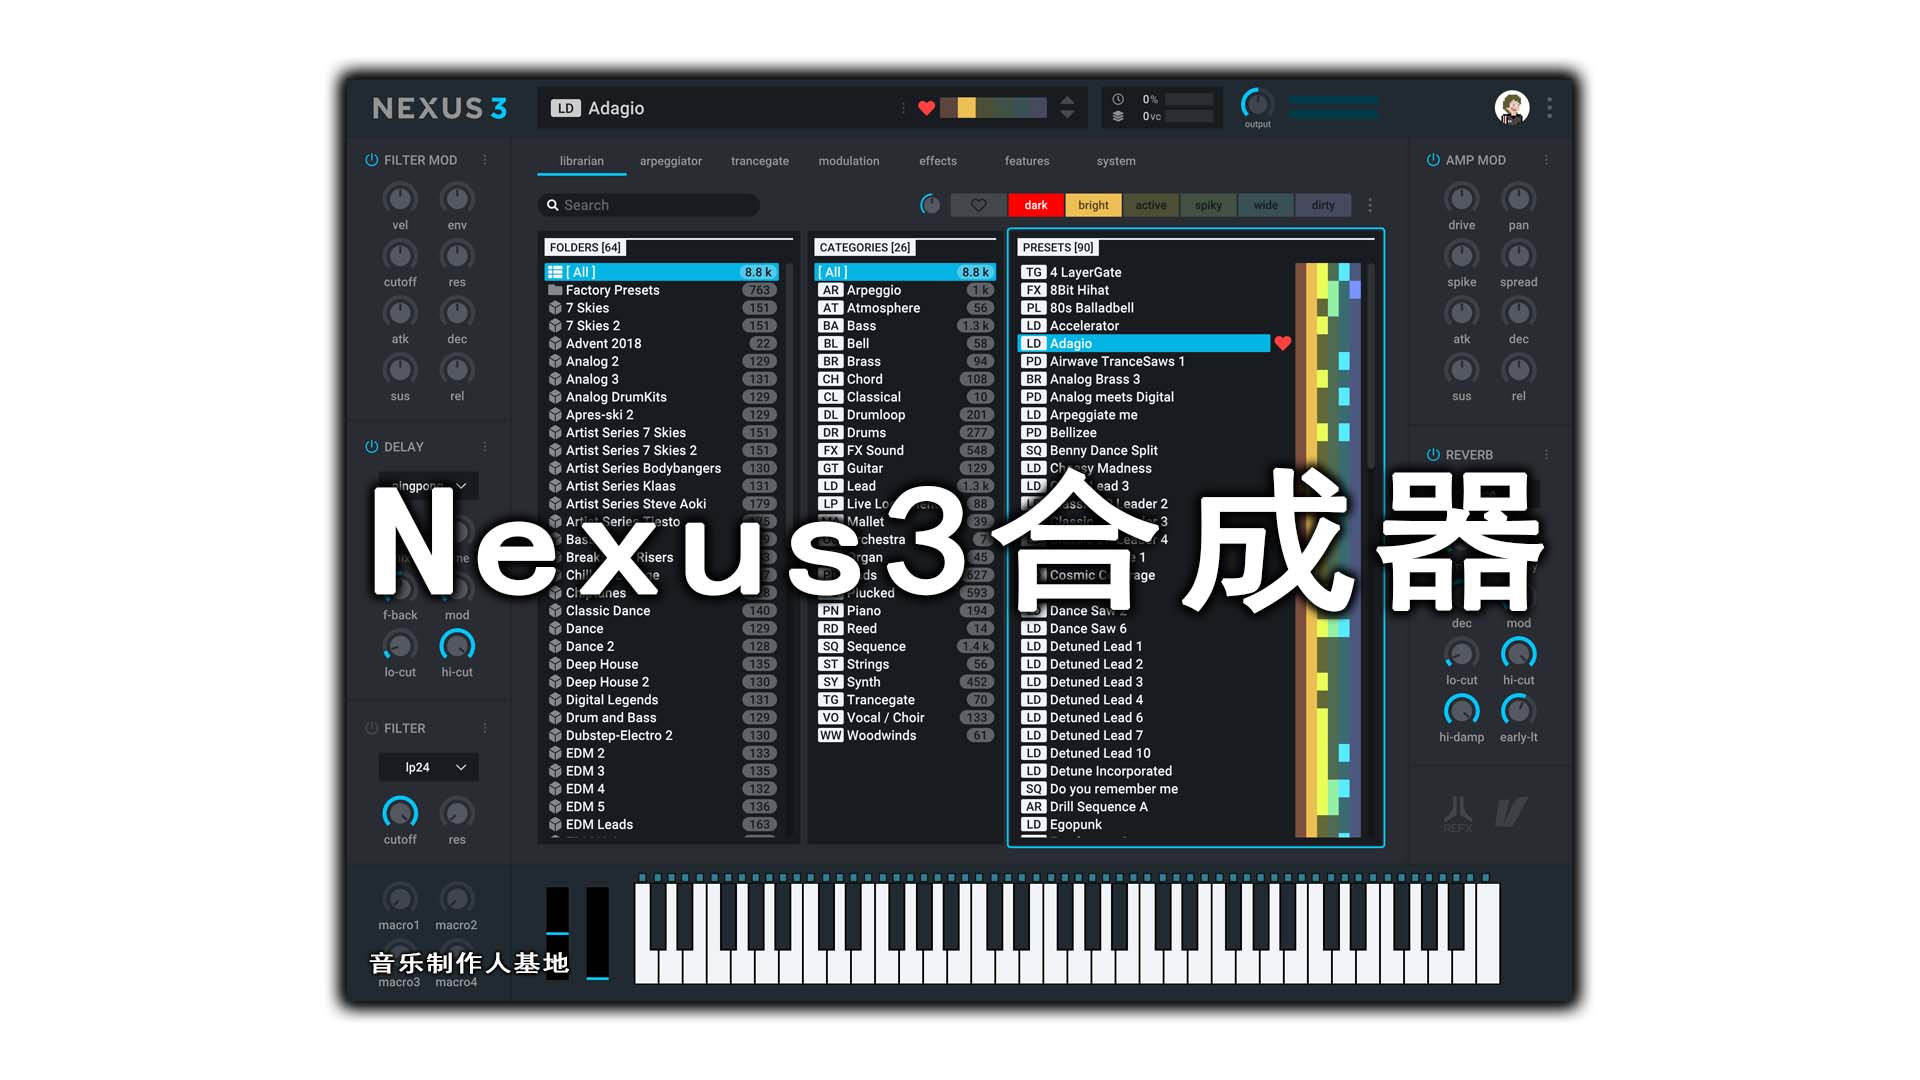 Nexus3合成器完整音色库版 (音乐制作人必备合成器) 音色超多! + 完整音色库版【WIN\MAC】